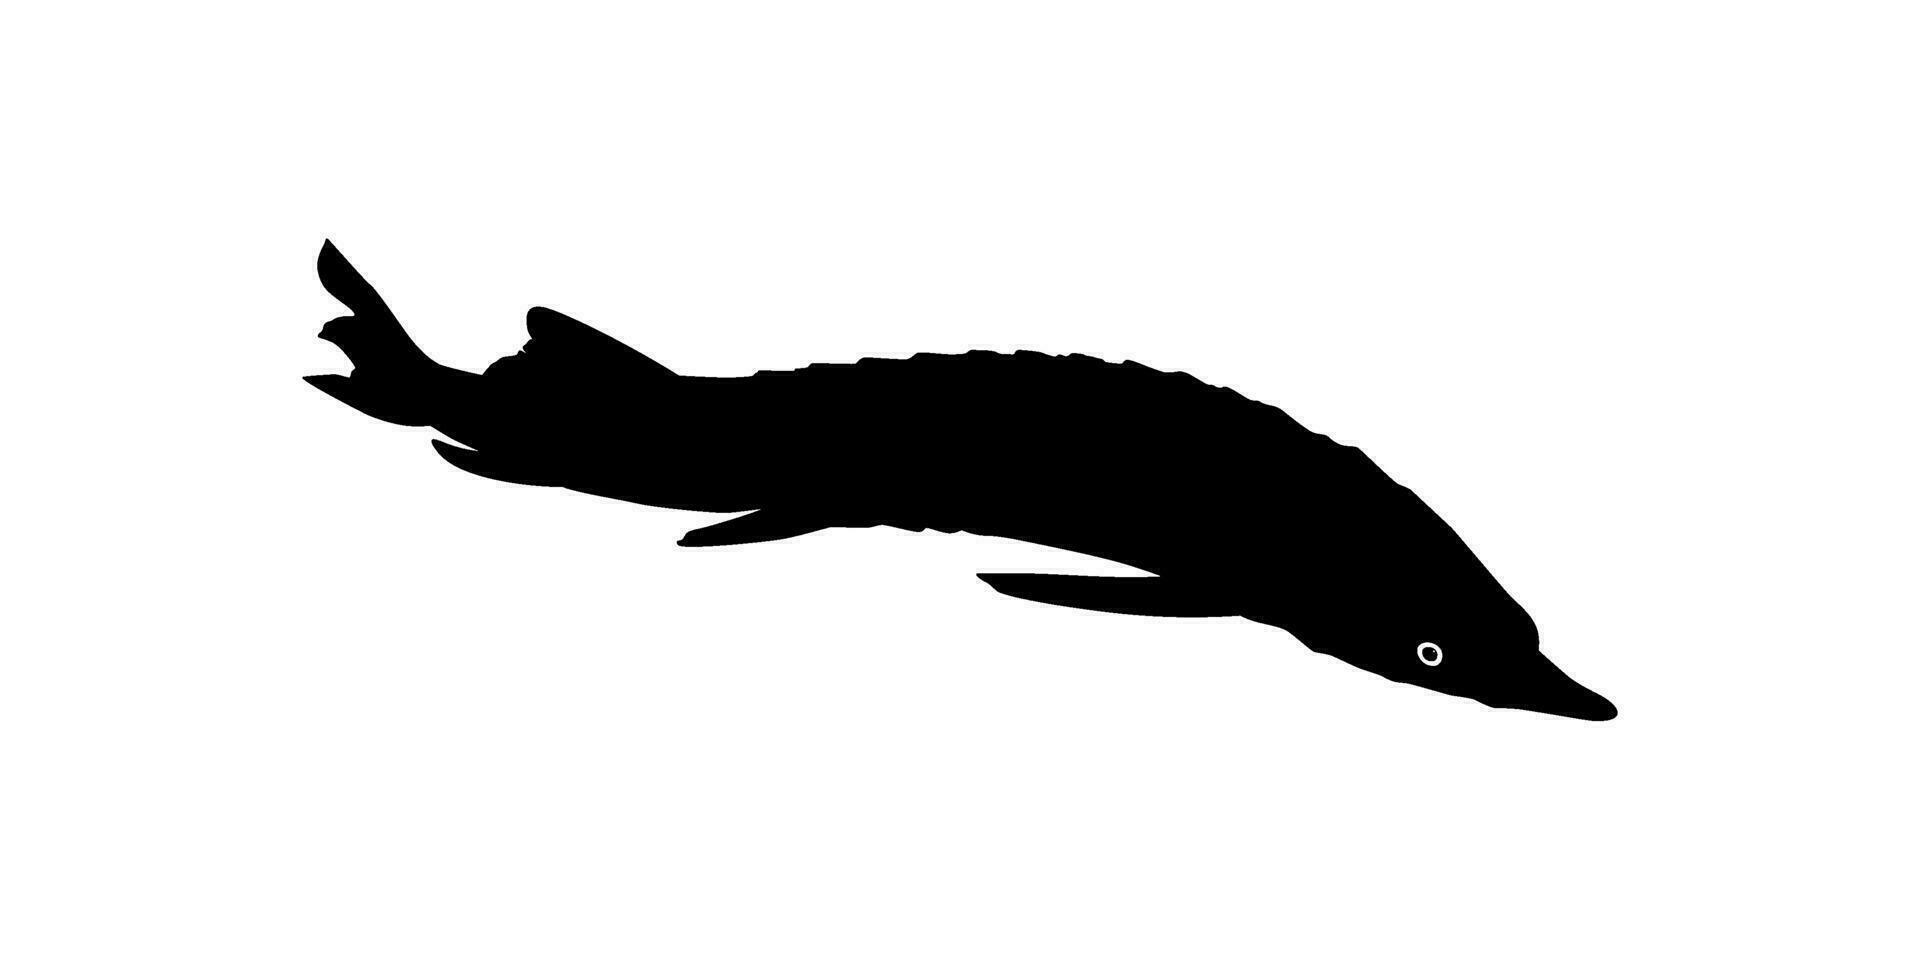 beluga steur of hoezo vis silhouet, vis welke produceren premie en duur kaviaar, voor logo type, kunst illustratie, pictogram, appjes, website of grafisch ontwerp element. vector illustratie